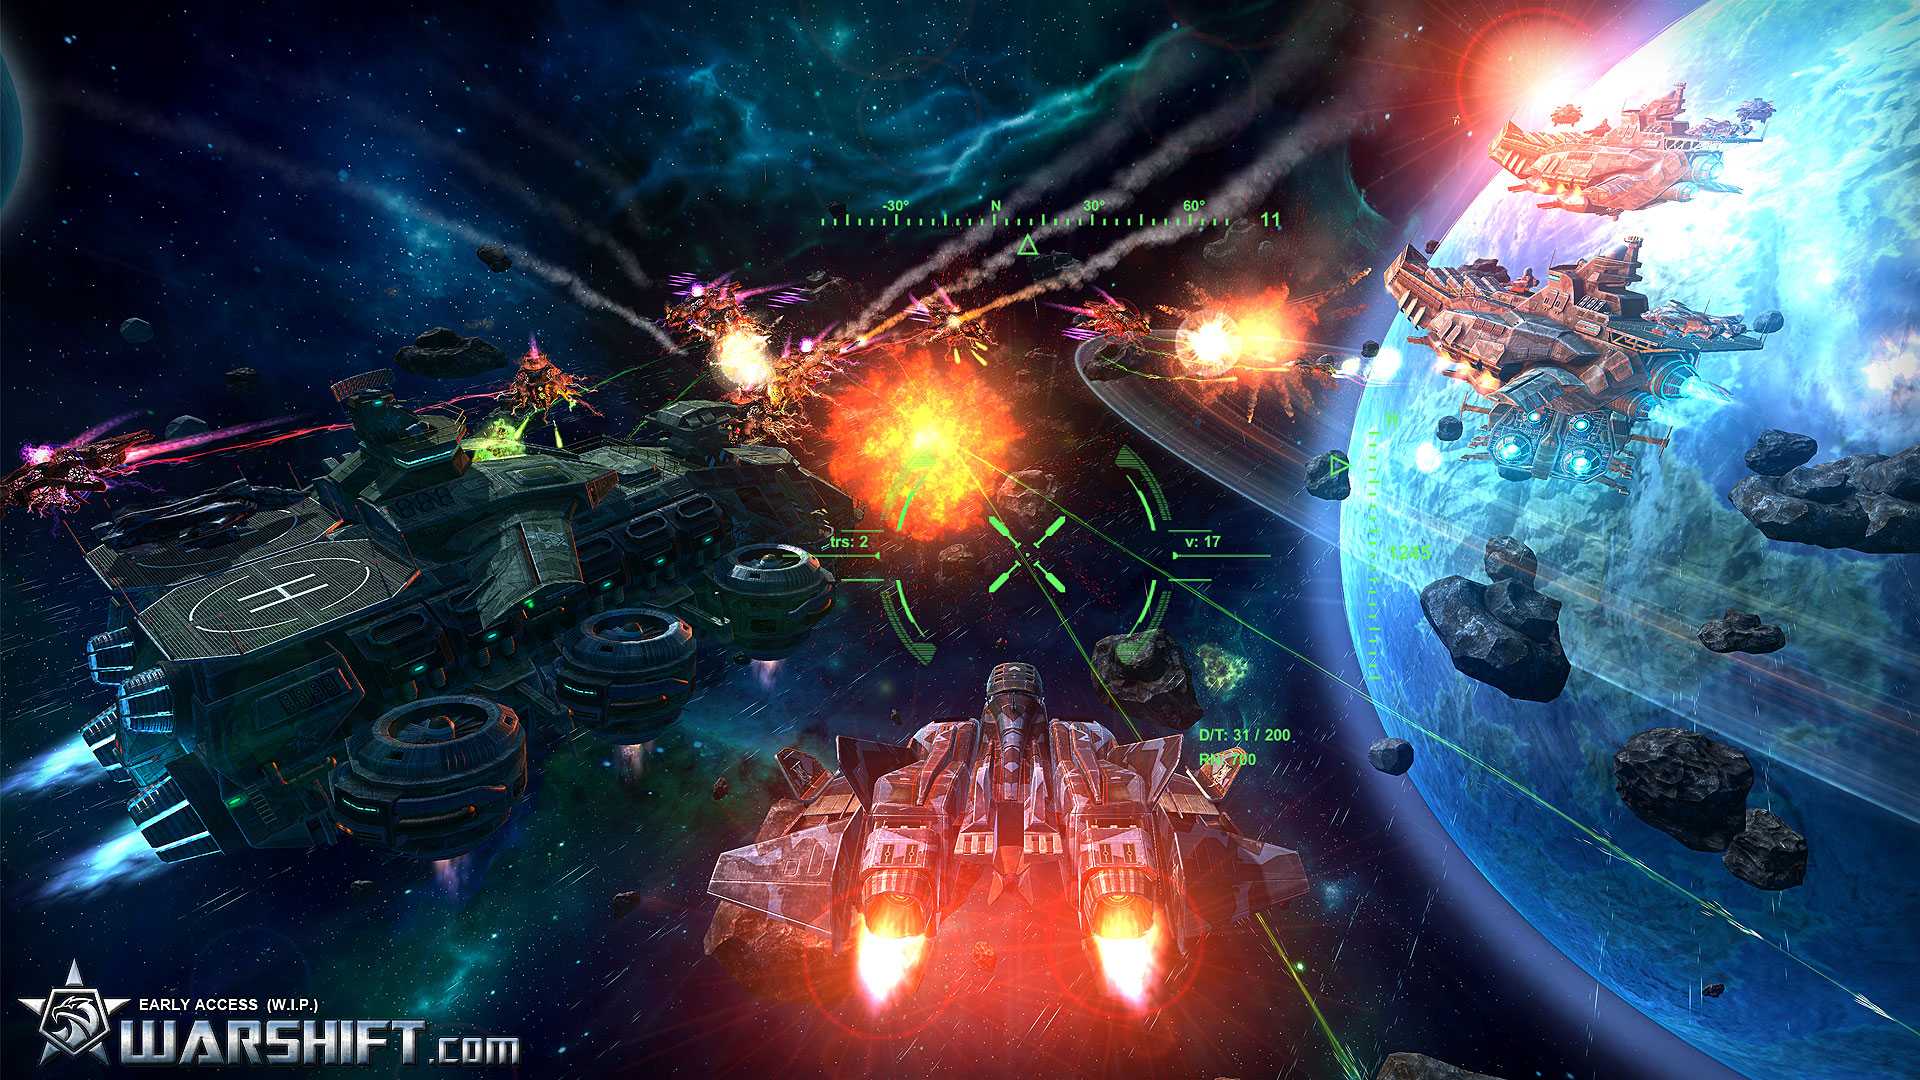 Игра звездная федерация играть бесплатно онлайн в космическую стратегию жанра sci-fi | kulakgame.com